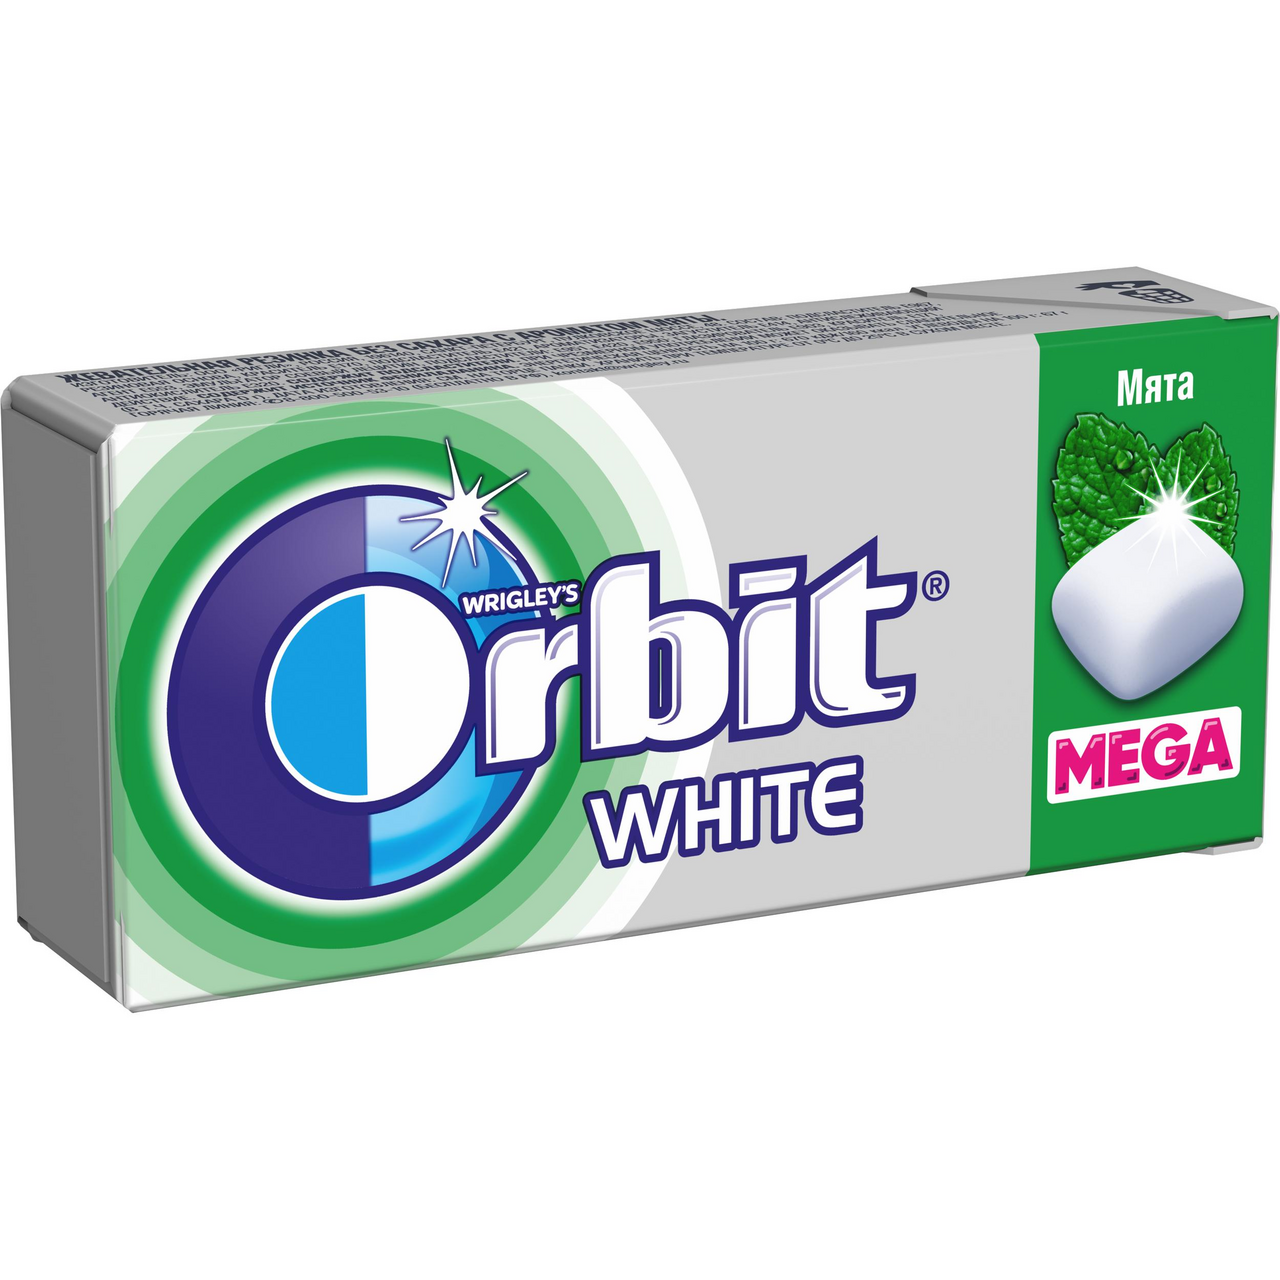 Дж орбит. Жевательная резинка Orbit White Mega мята, 16.4 г. Orbit White мята Mega. Орбит Refreshers жевательная резинка мята 16г. Жвачка орбит с мятой.